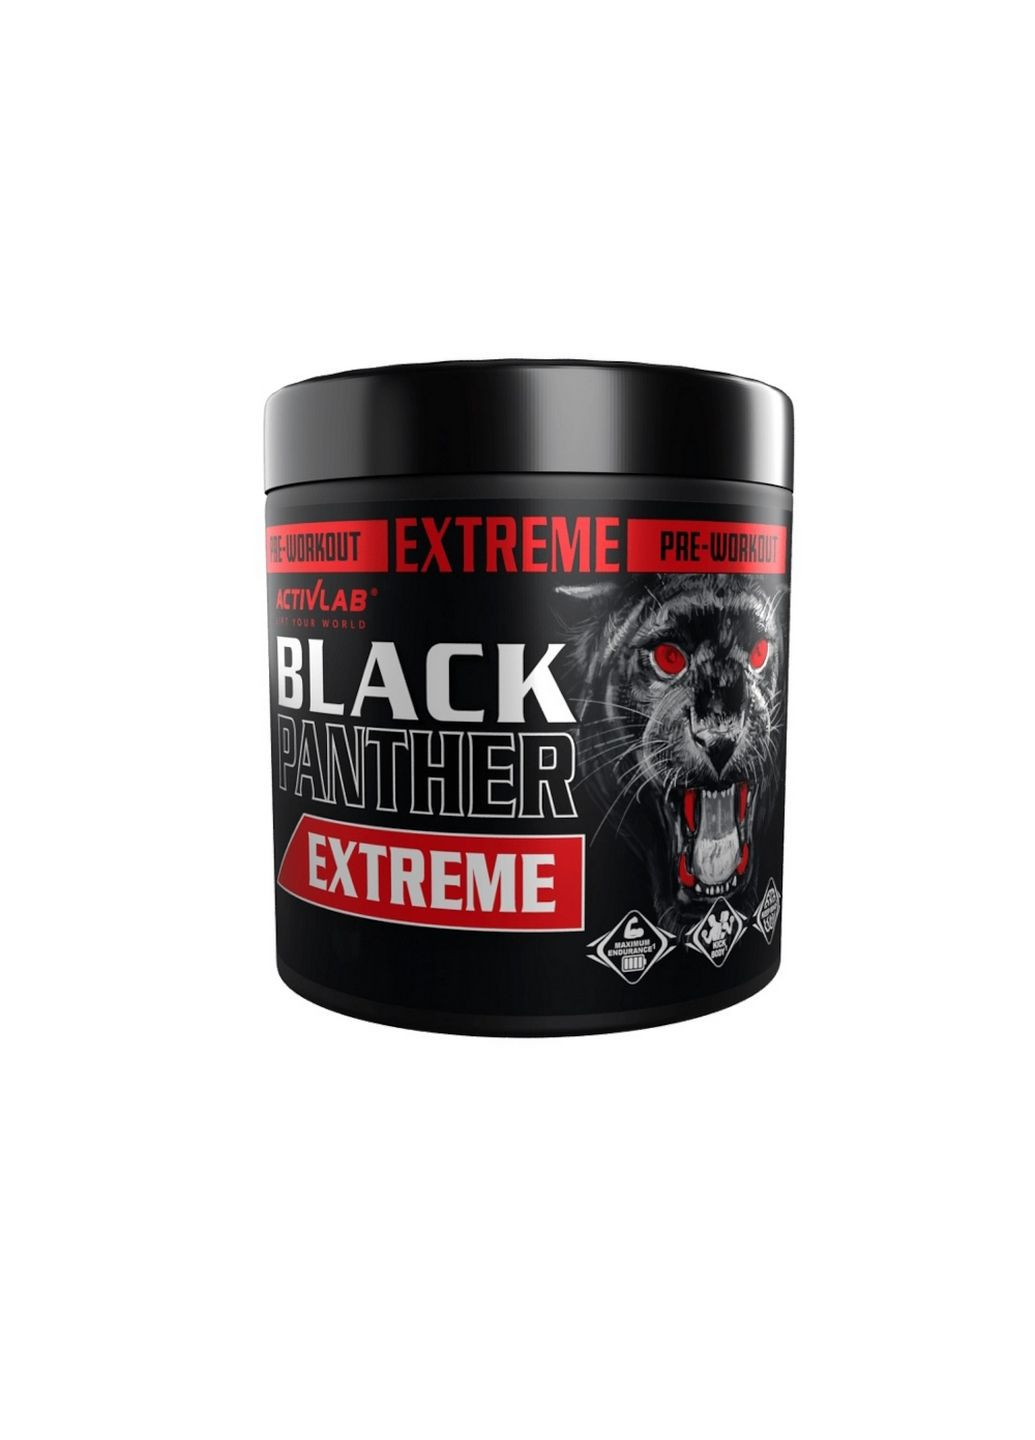 Предтренировочный комплекс Black Panther Extreme, 300 грамм Черная смородина ActivLab (293416109)